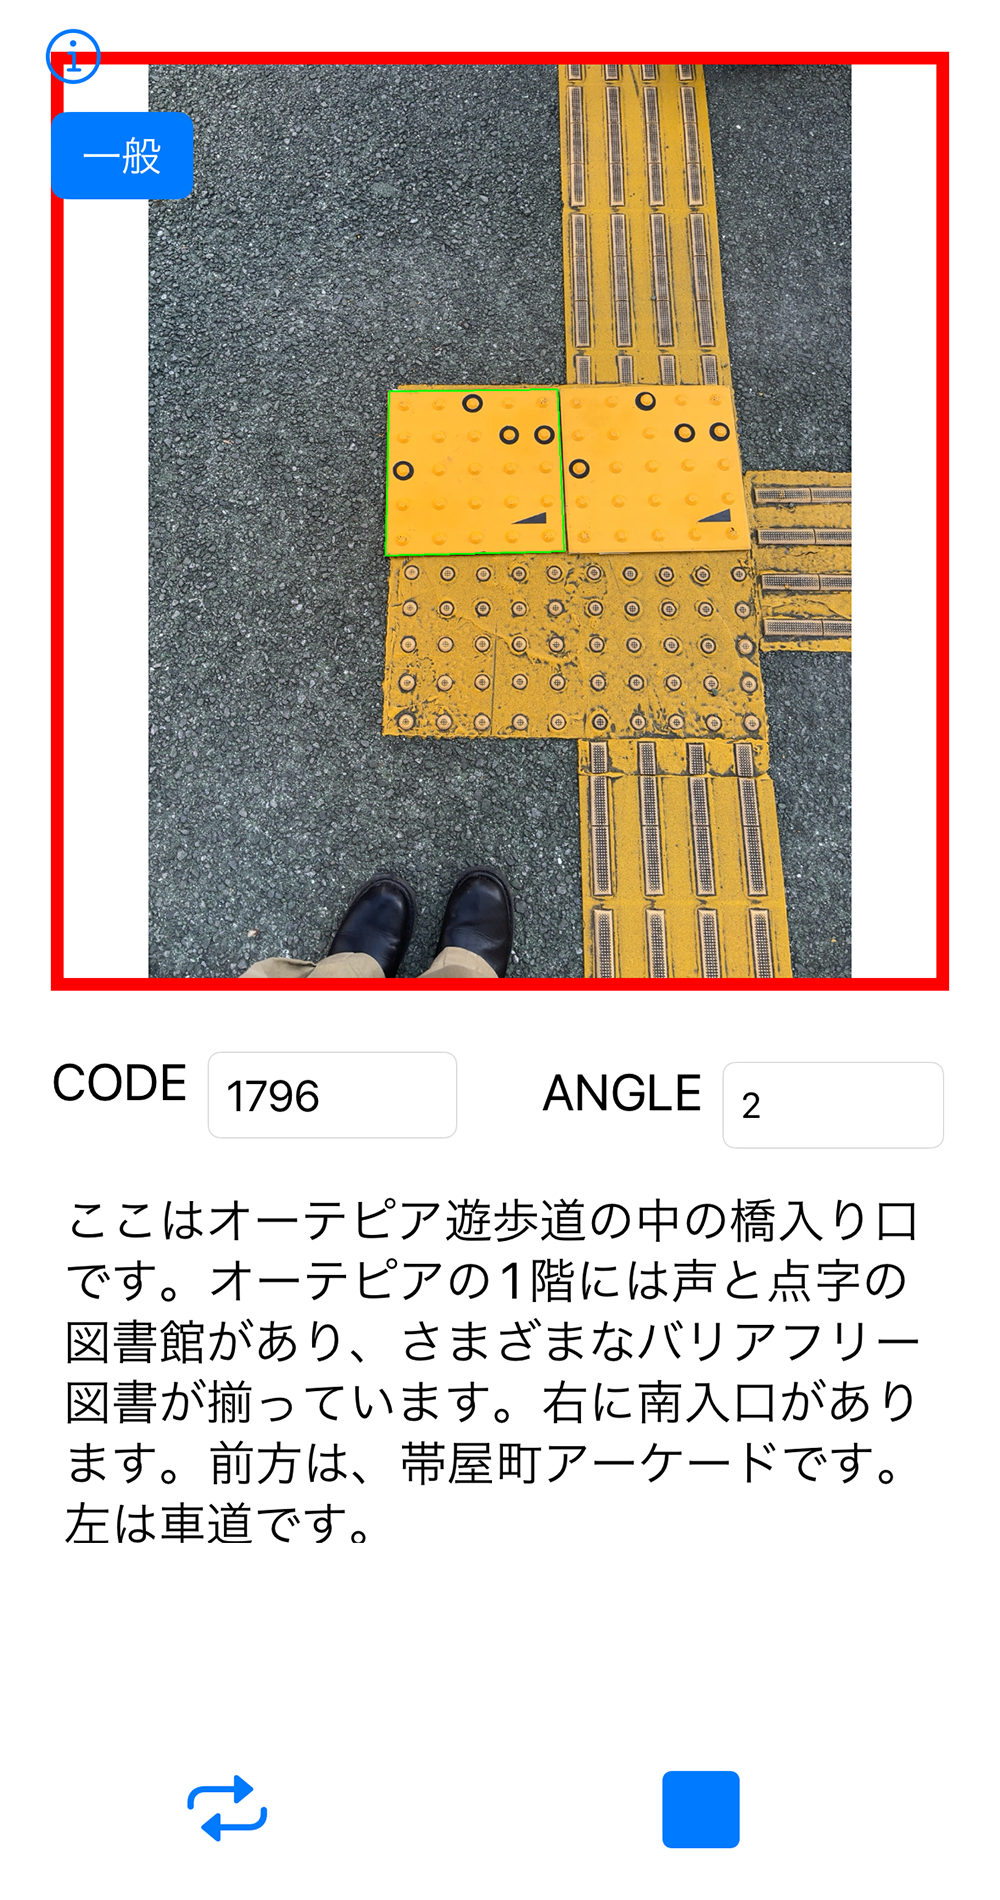 コード化点字ブロックの読み取りアプリの画面キャプチャ。上部にコードの読み取り表示があり、その下にコード番号、アングル、案内情報が表示される。「ここはオーテピア遊歩道の中の橋入り口です。オーテピアの1階には声と点字の図書館があり、さまざまなバリアフリー図書が揃っています。右に南入口があります。前方は帯屋町アーケードです。左は車道です。」